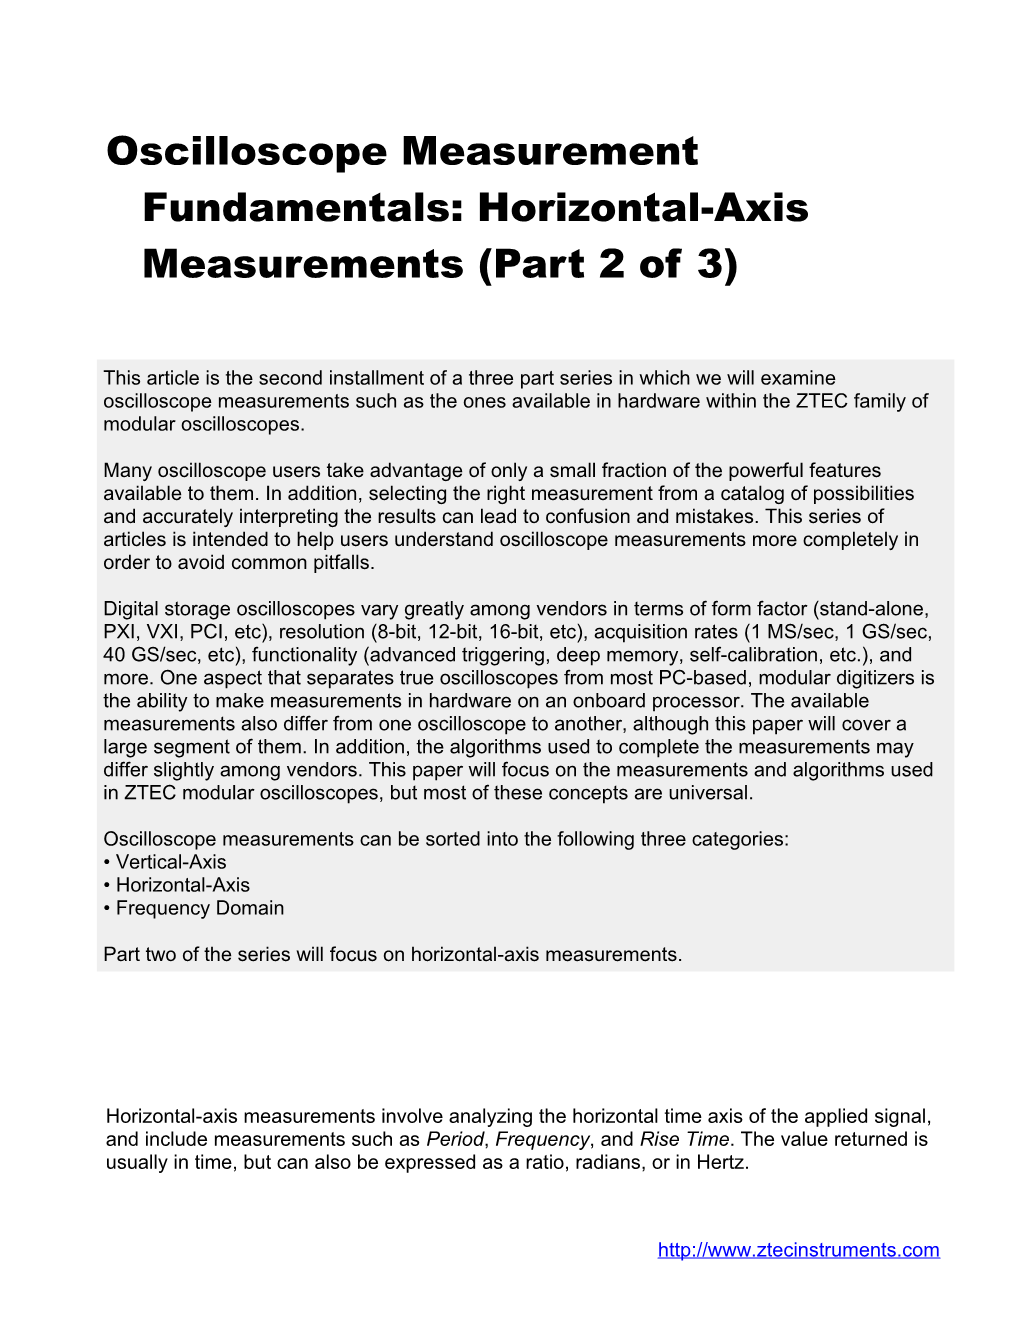 Oscilloscope Measurement Fundamentals: Horizontal-Axis Measurements (Part 2 of 3)